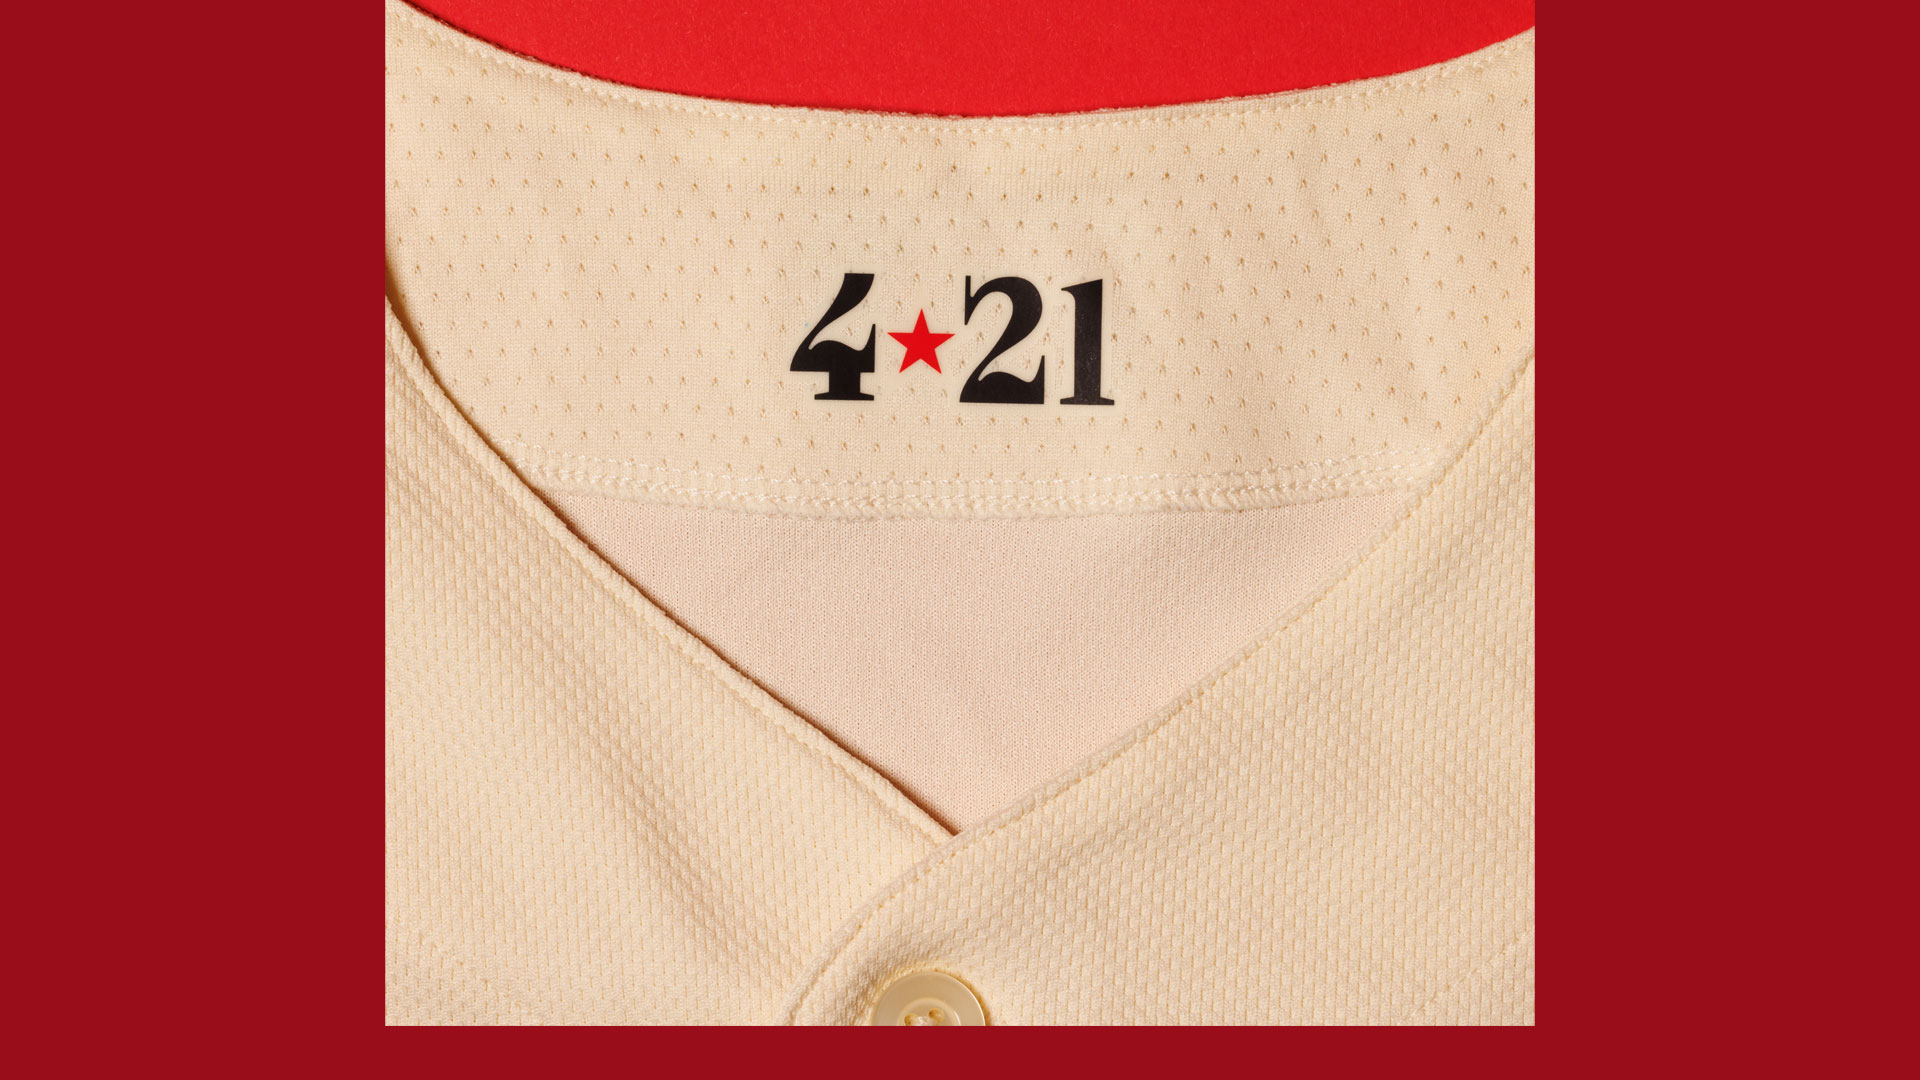 Texas Rangers City Connect uniforms 2023: Pictures, details, info